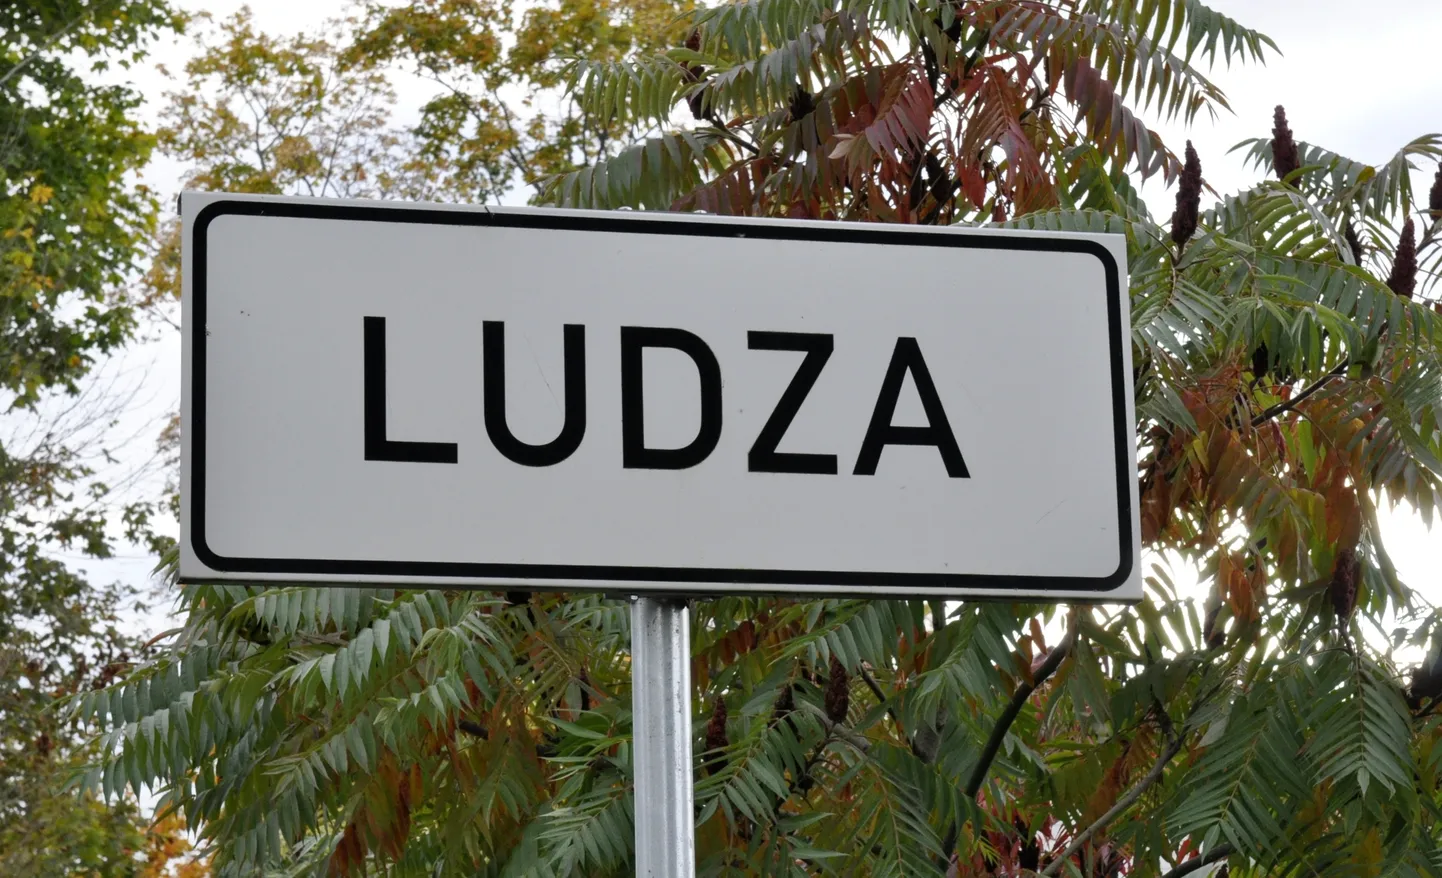 Vietas norādes ceļa zīme - Ludza. Ilustratīvs attēls.